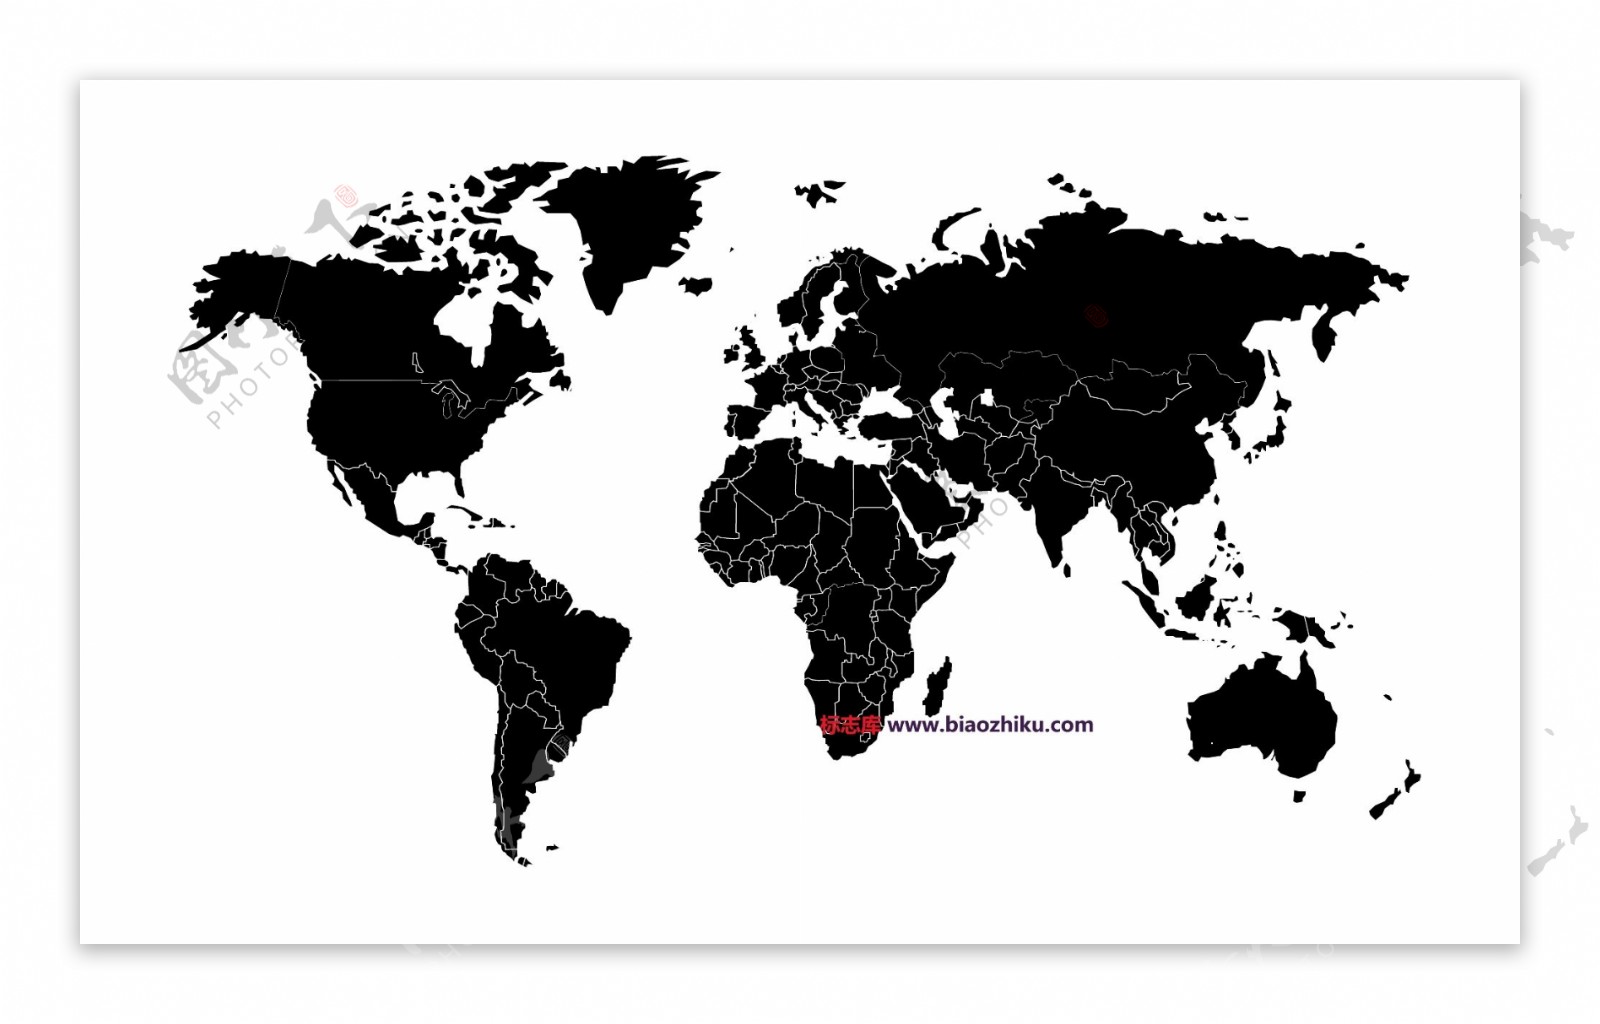 Worldvectormaplogo设计欣赏Worldvectormap旅游业LOGO下载标志设计欣赏